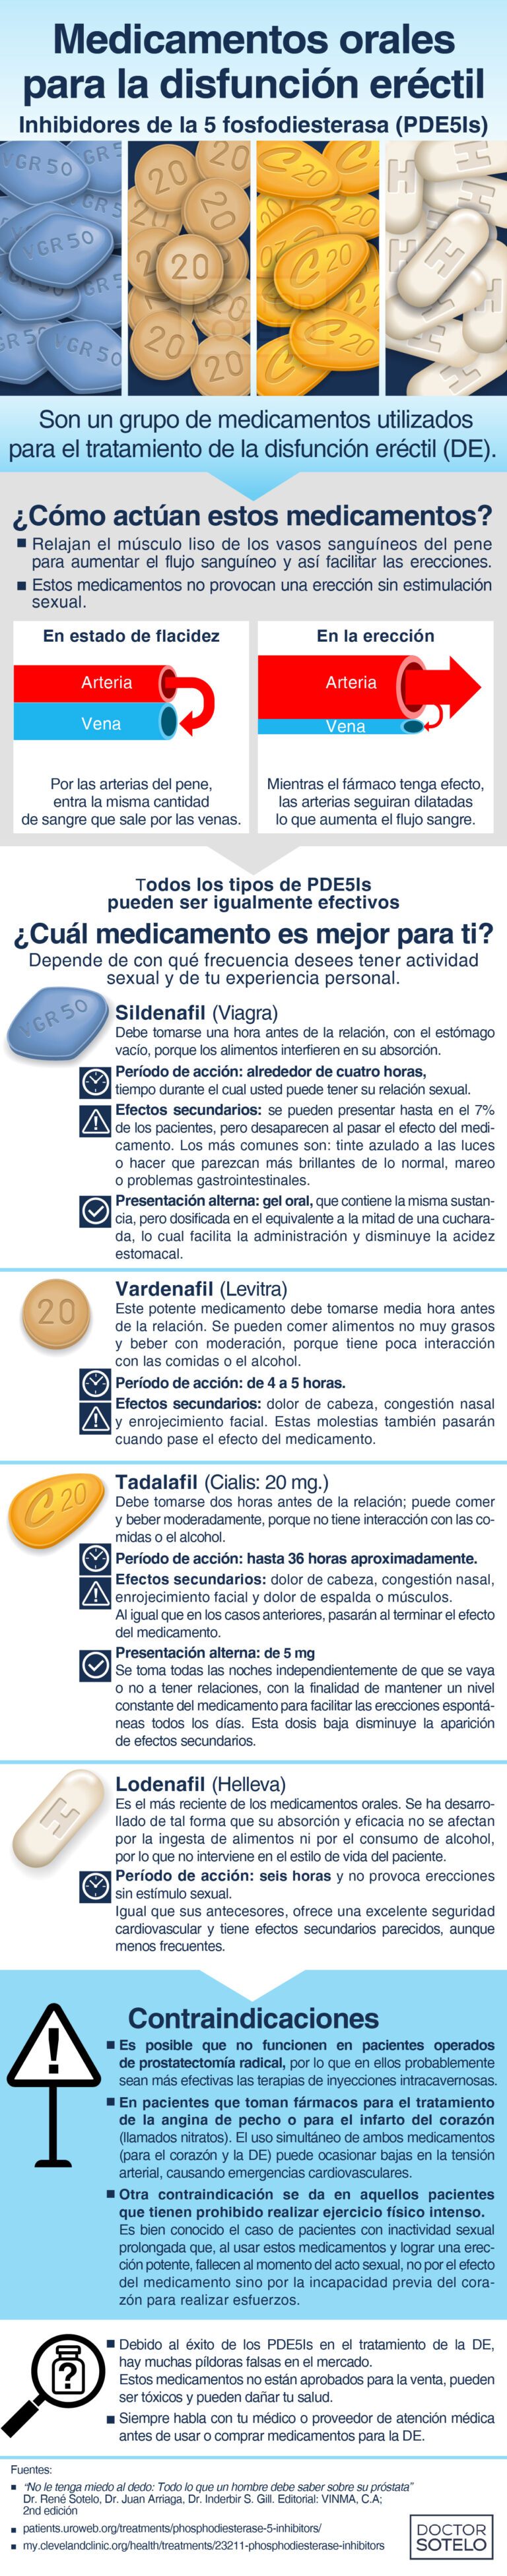 Medicamentos Orales para la disfunción eréctil: Inhibidores de la 5 fosfodiesterasa